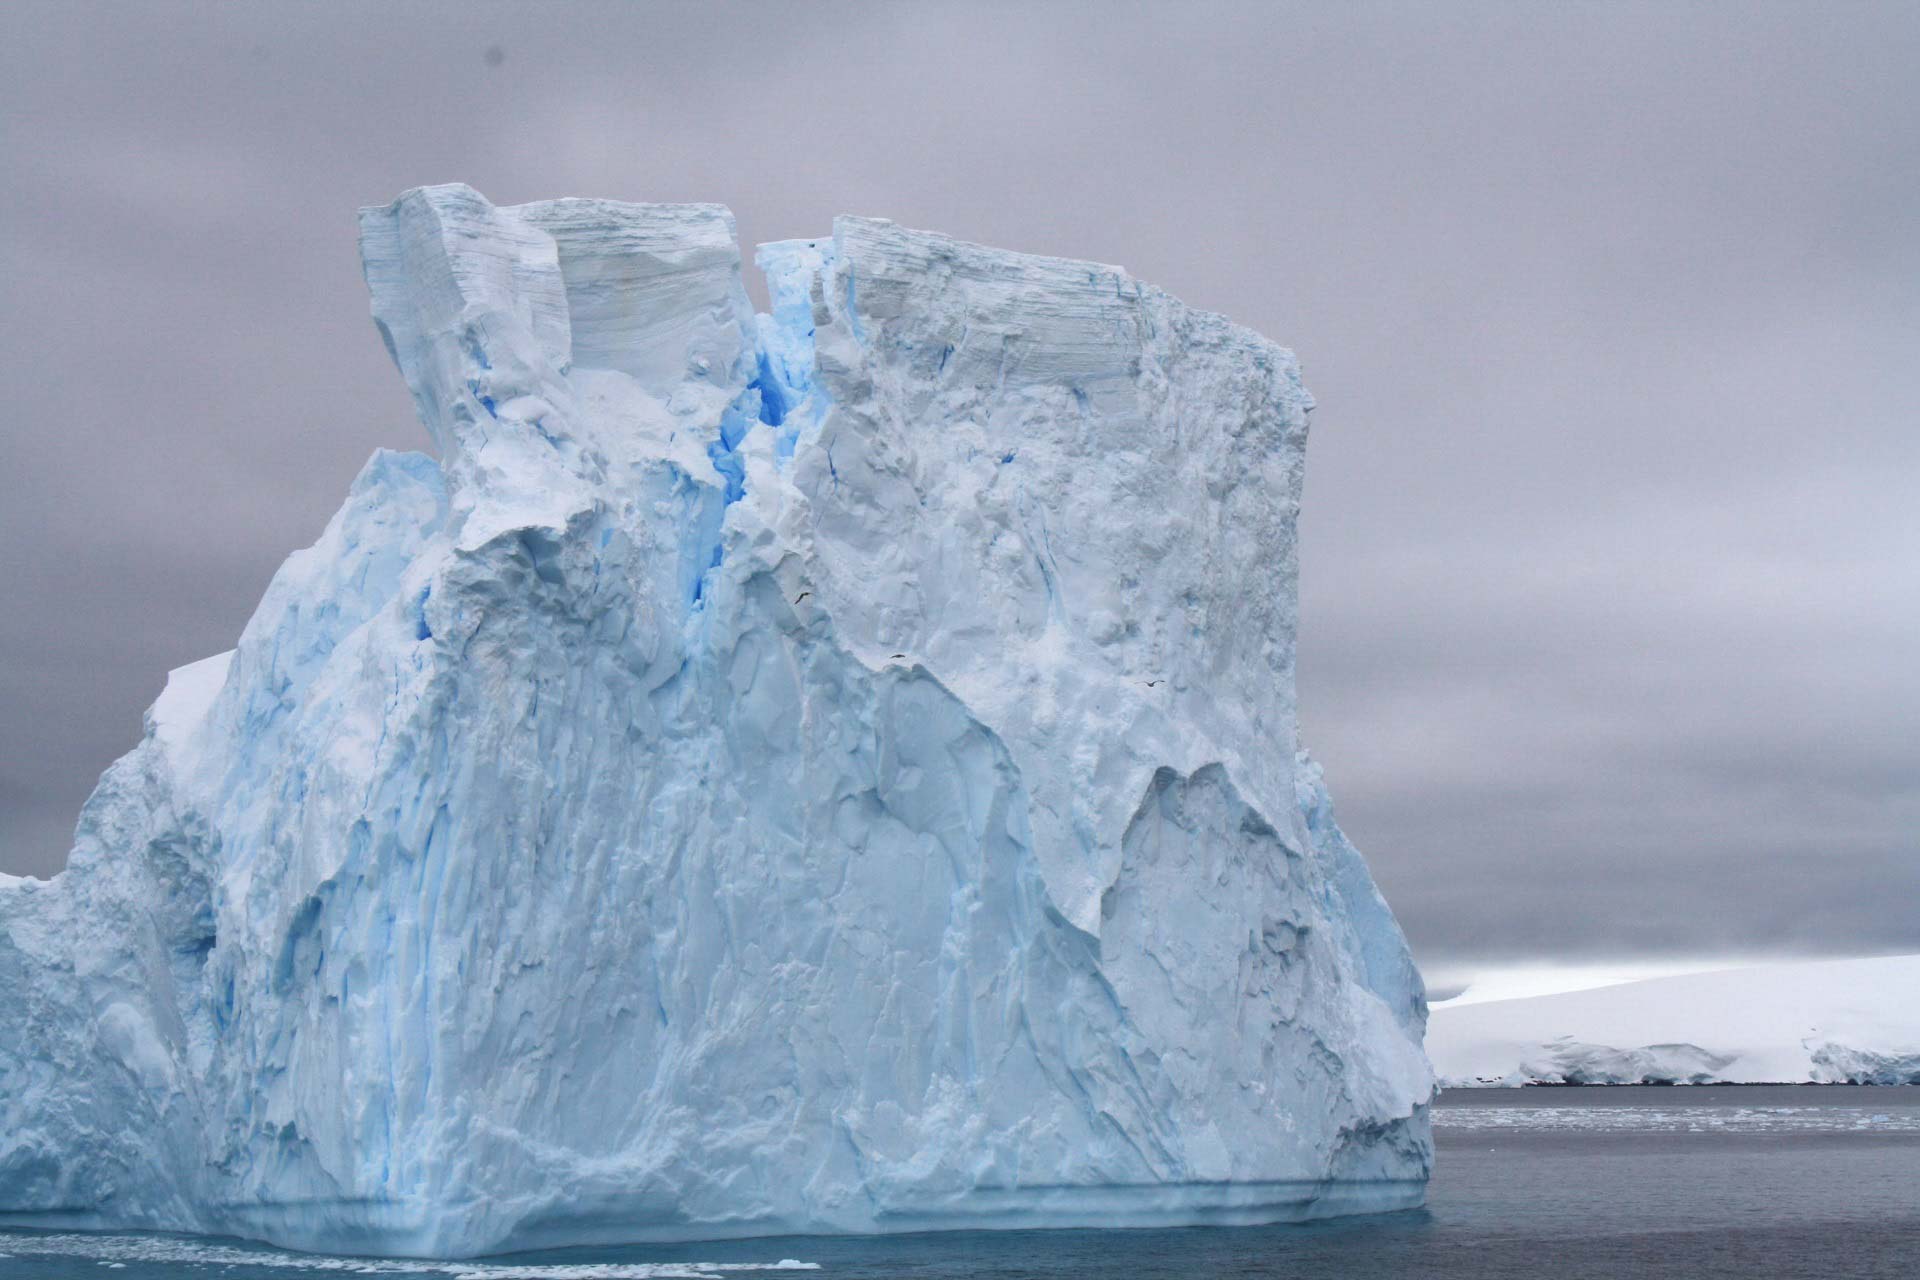 Iceberg in the Antarctica region